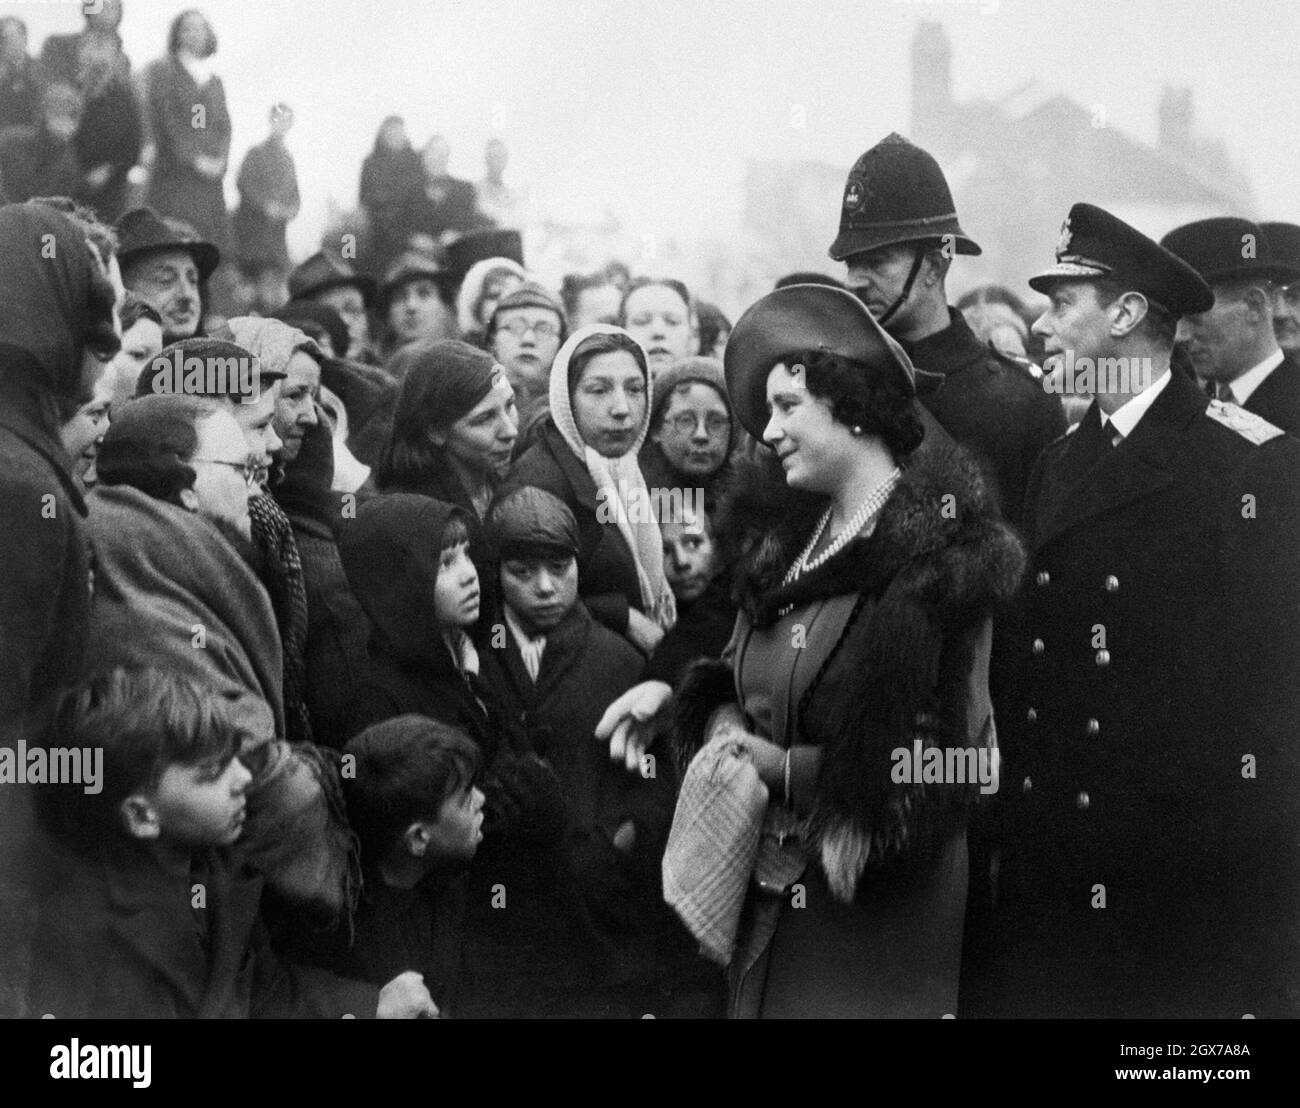 Le roi George VI et la reine Elizabeth (la reine mère) rendent visite aux personnes laissées sans abri à la suite des raids de bombardement nazis, janvier 1941 Banque D'Images